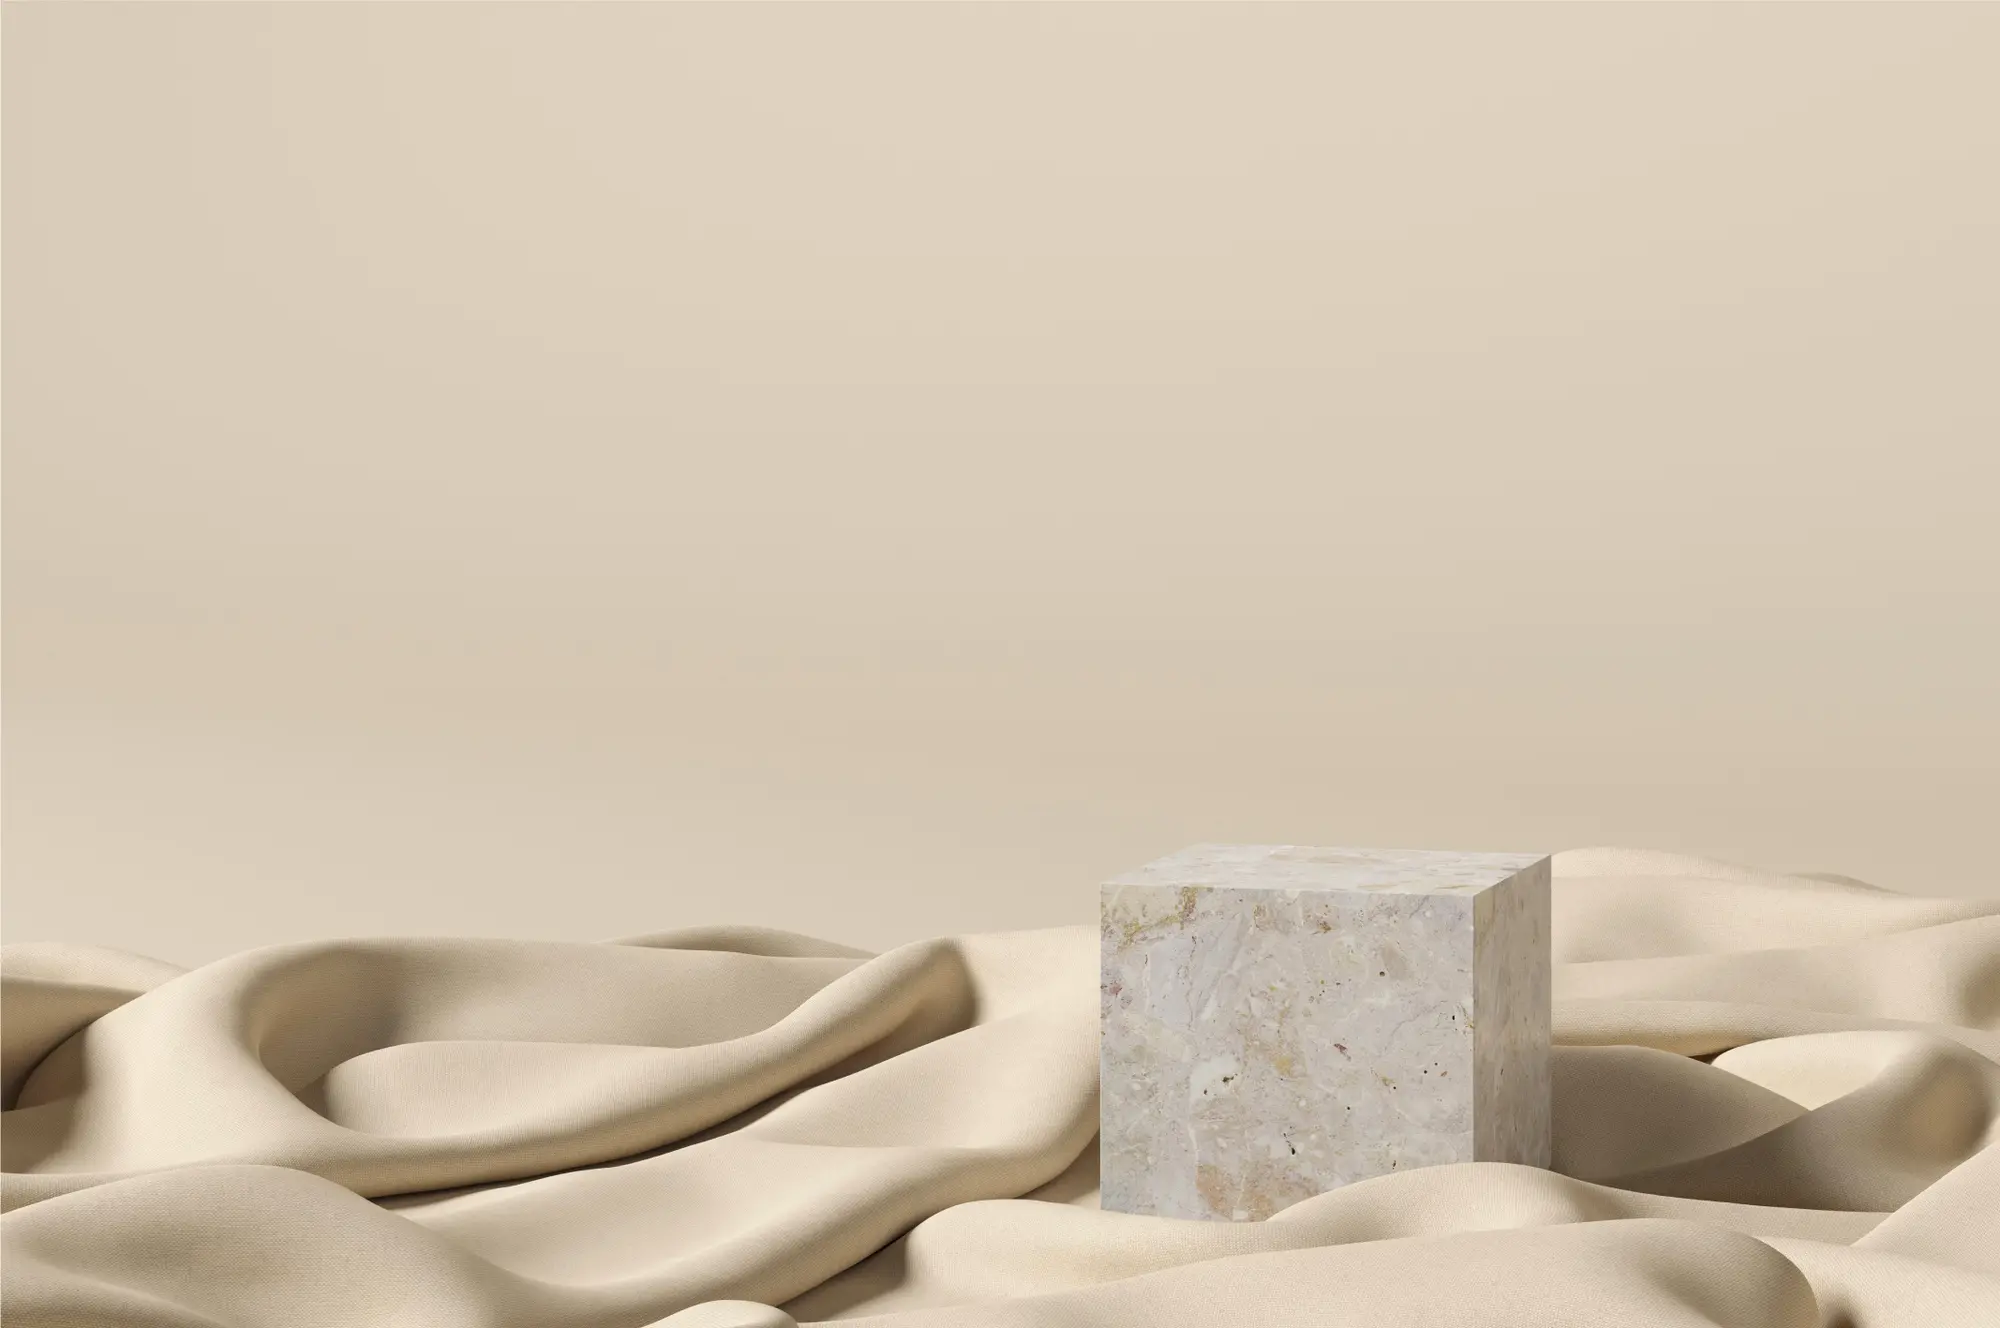 Imagen 3D de material de tela seda y de piedra sobre fondo color crema